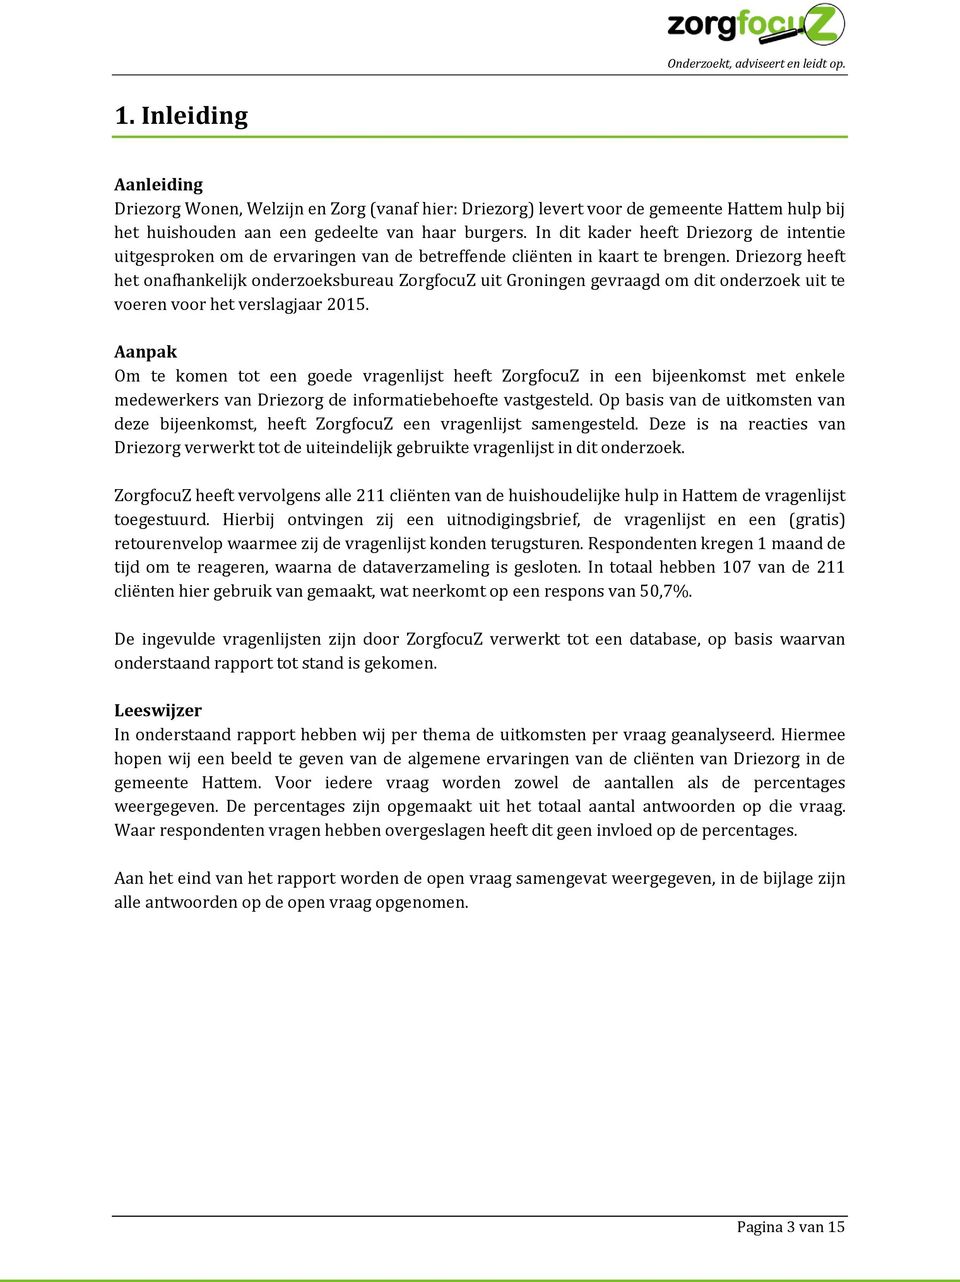 Driezorg heeft het onafhankelijk onderzoeksbureau ZorgfocuZ uit Groningen gevraagd om dit onderzoek uit te voeren voor het verslagjaar 2015.